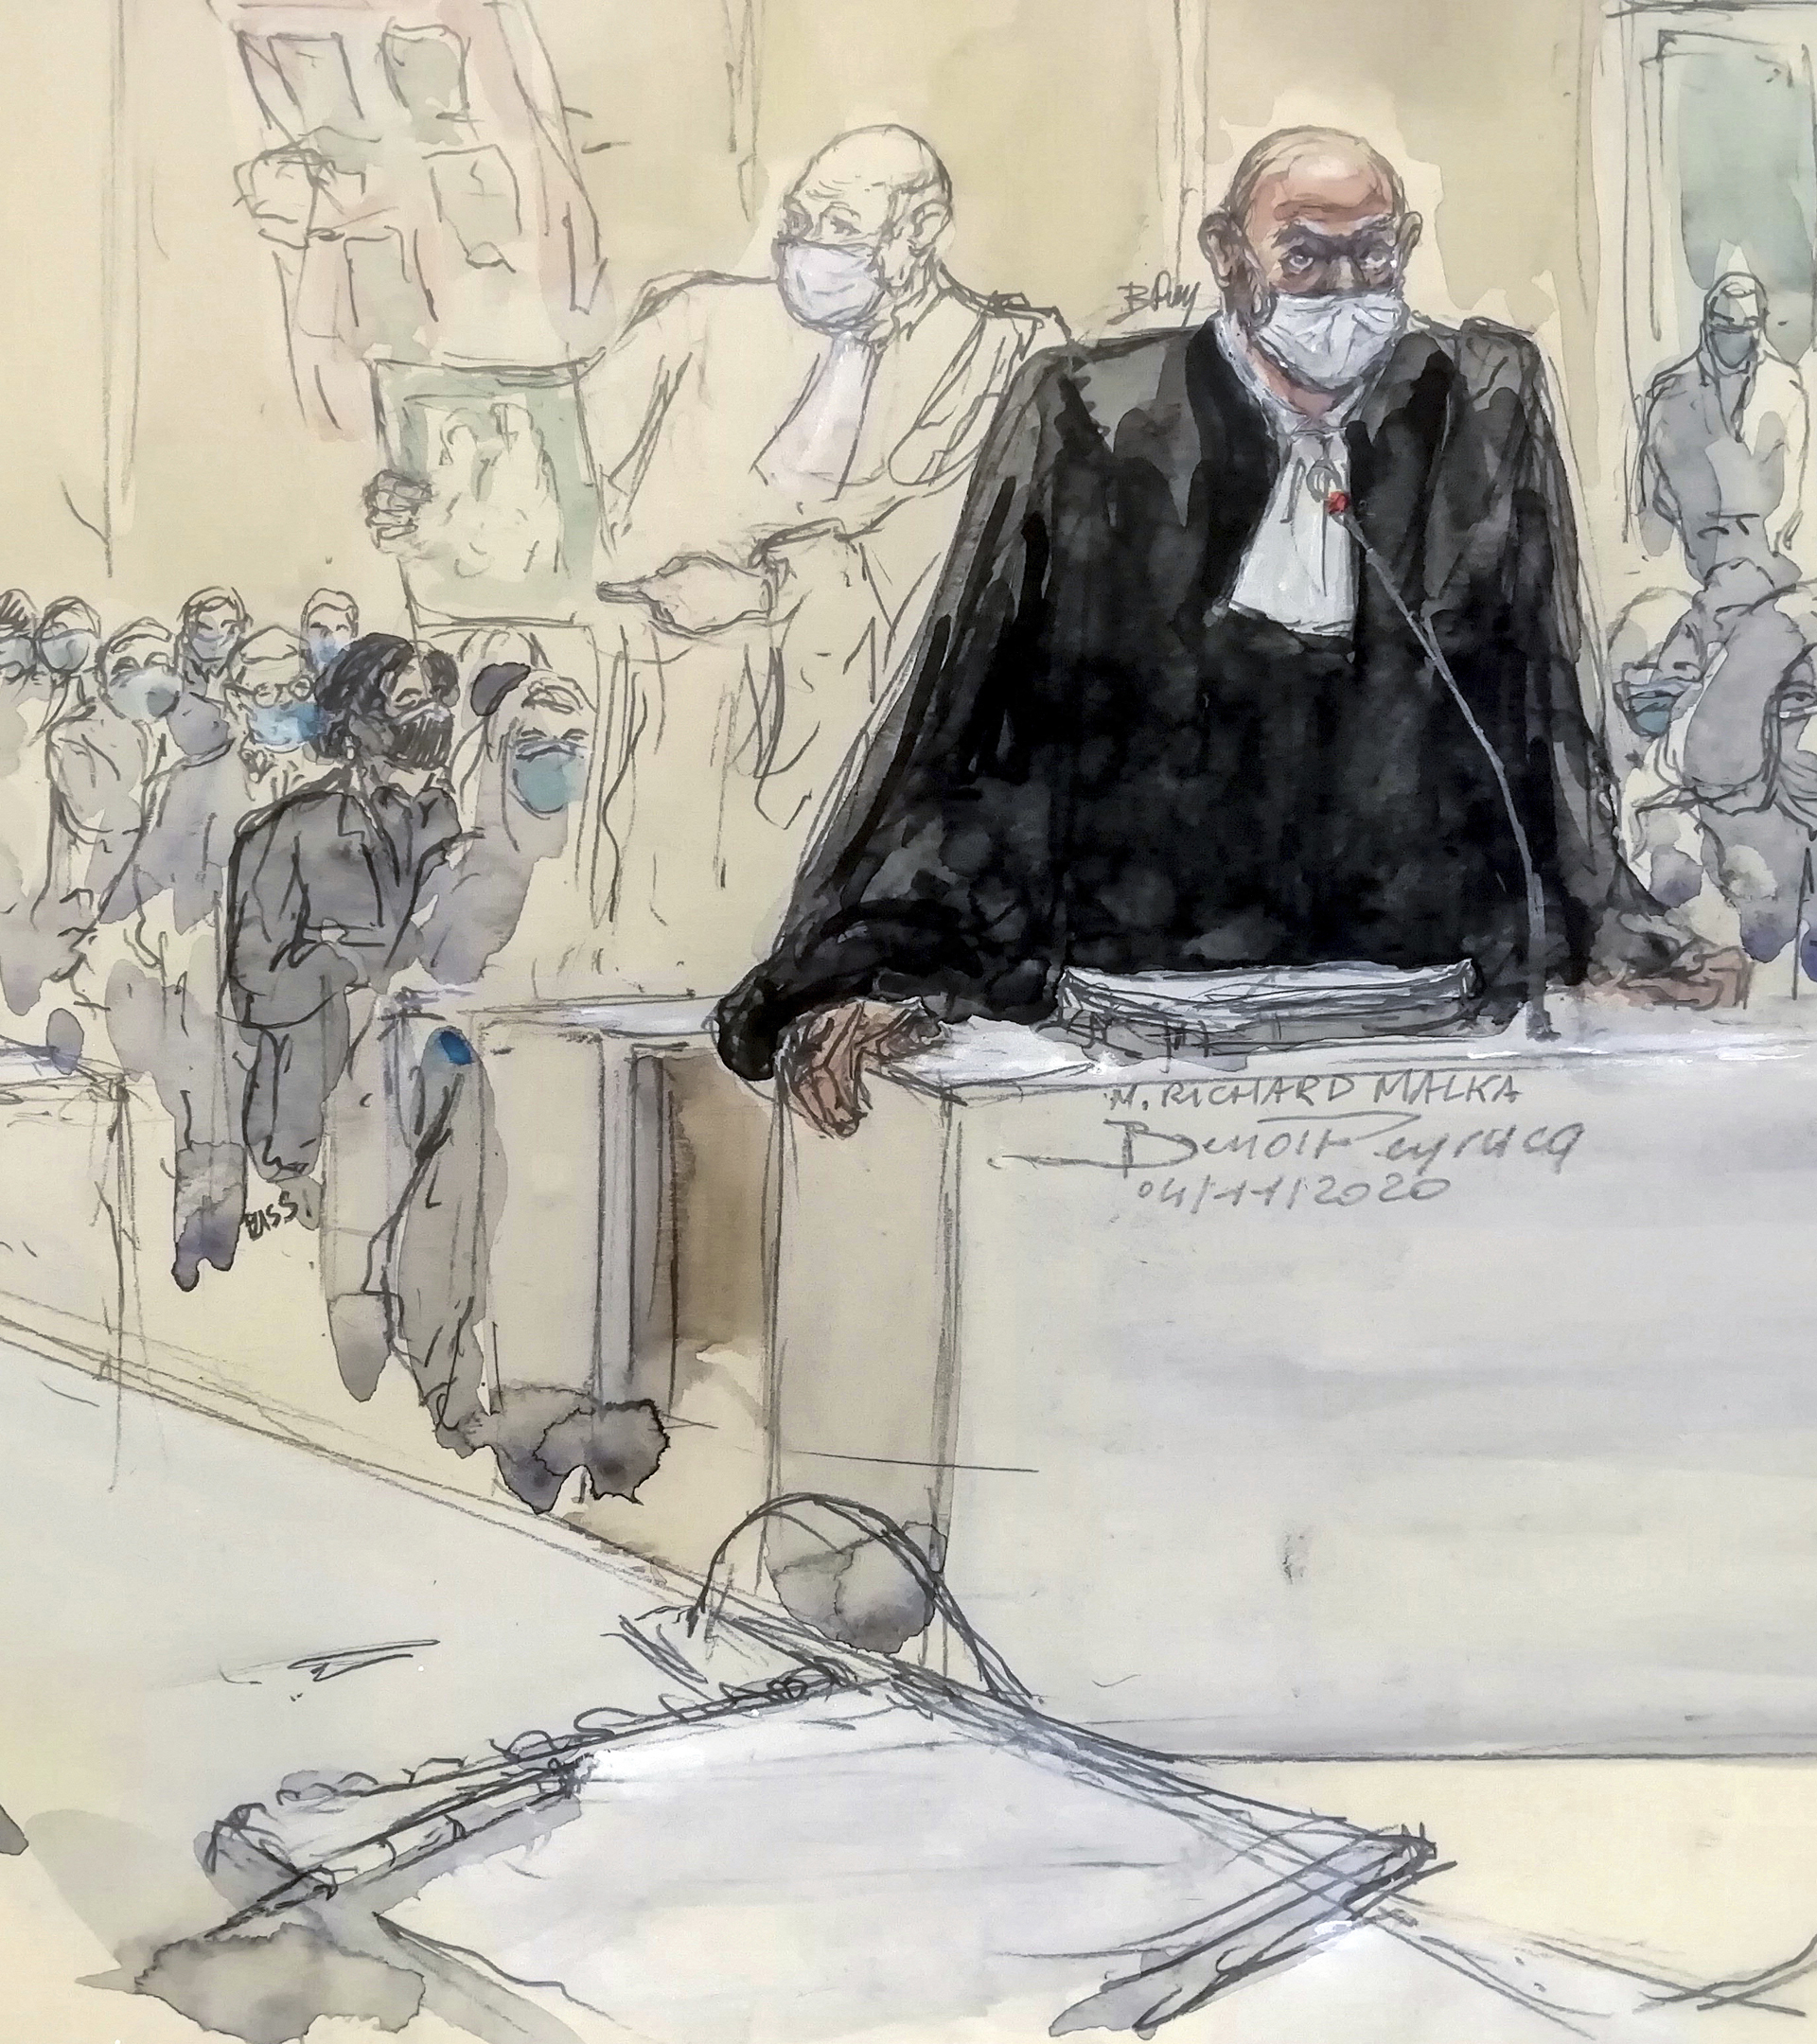 Malka, retratado en una sesin del juicio contra los autores del atentado contra Charlie Hebdo.